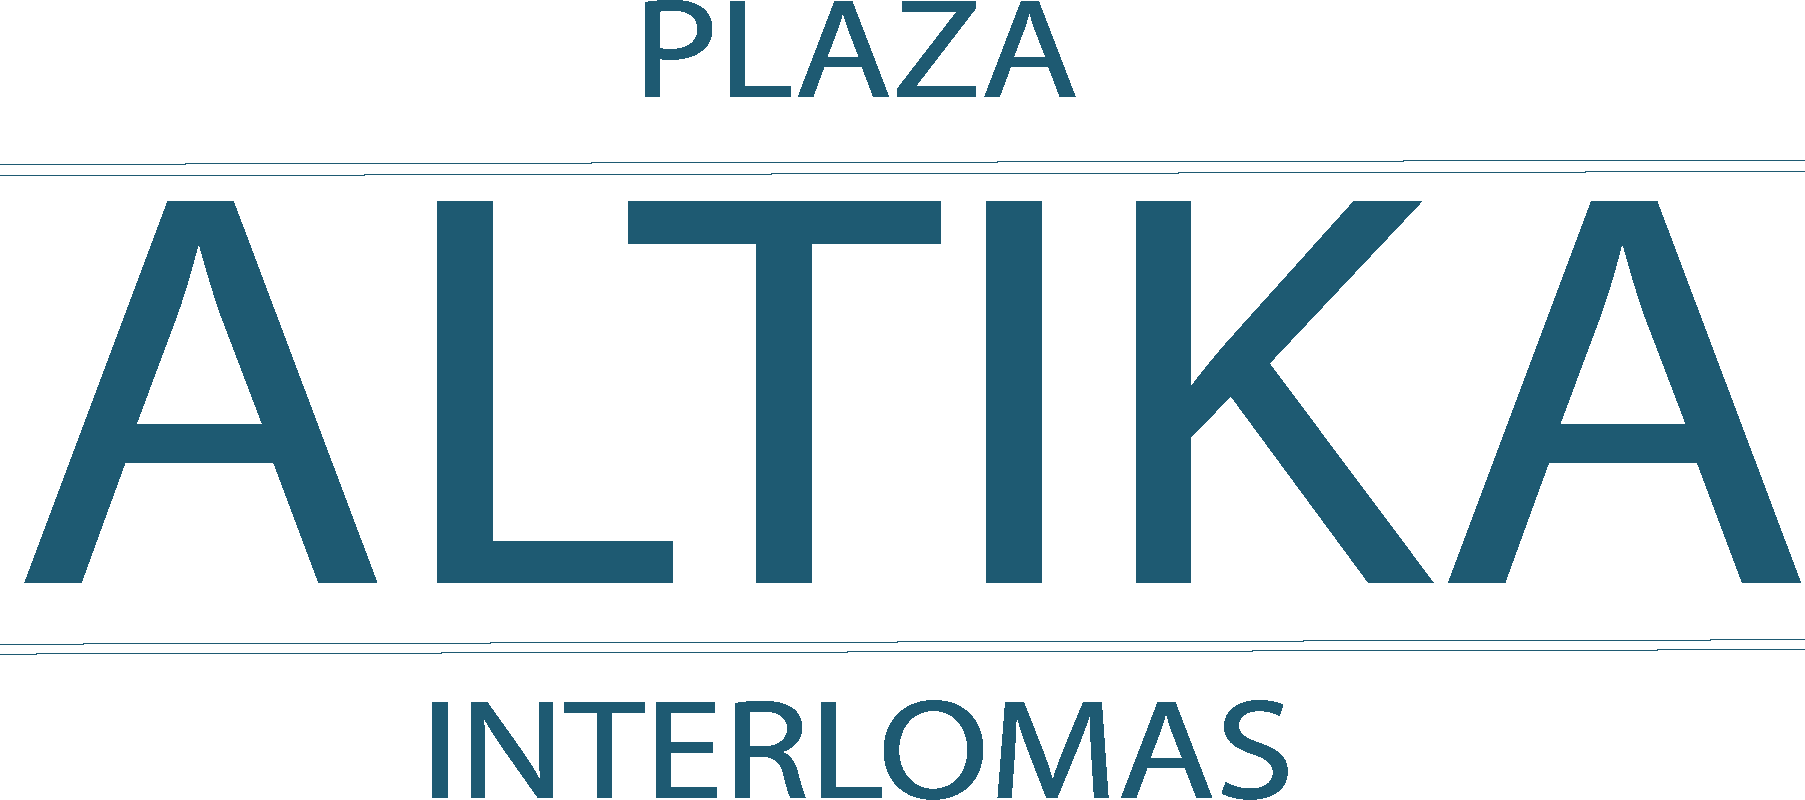 Plaza Altika